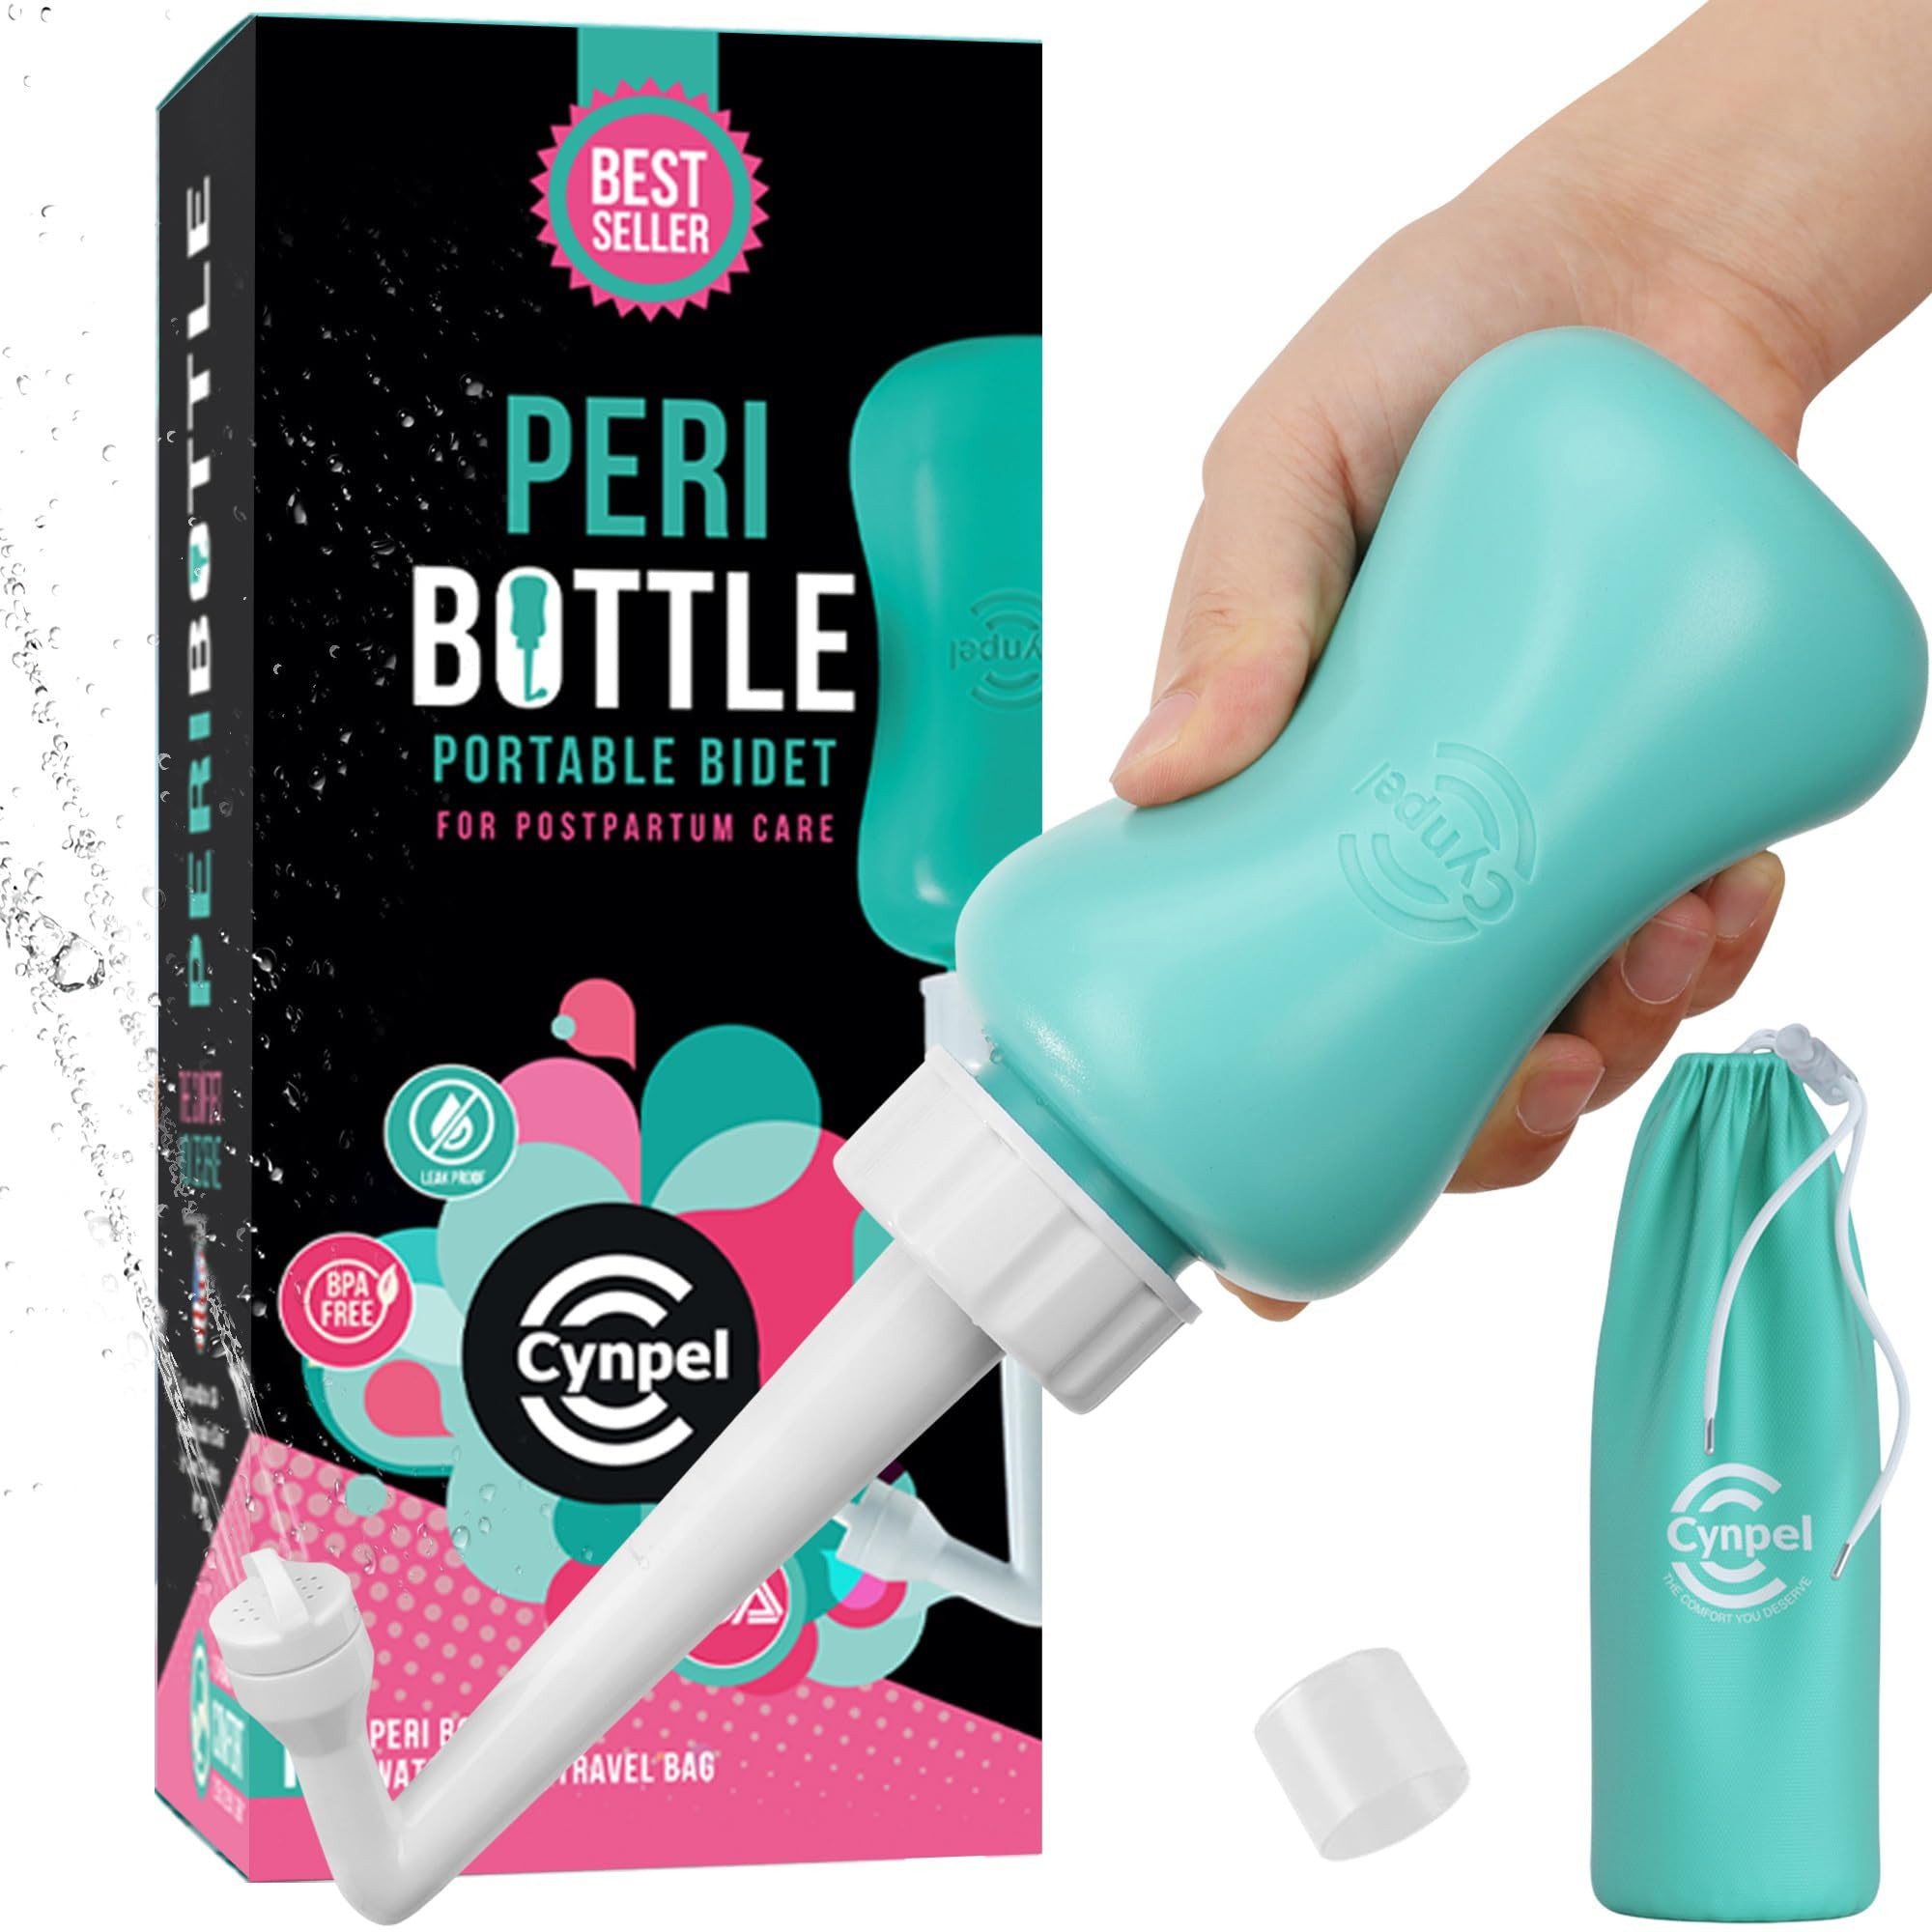 Peri Bottle - El bidé original portátil en forma de botella para el cuidado femenino